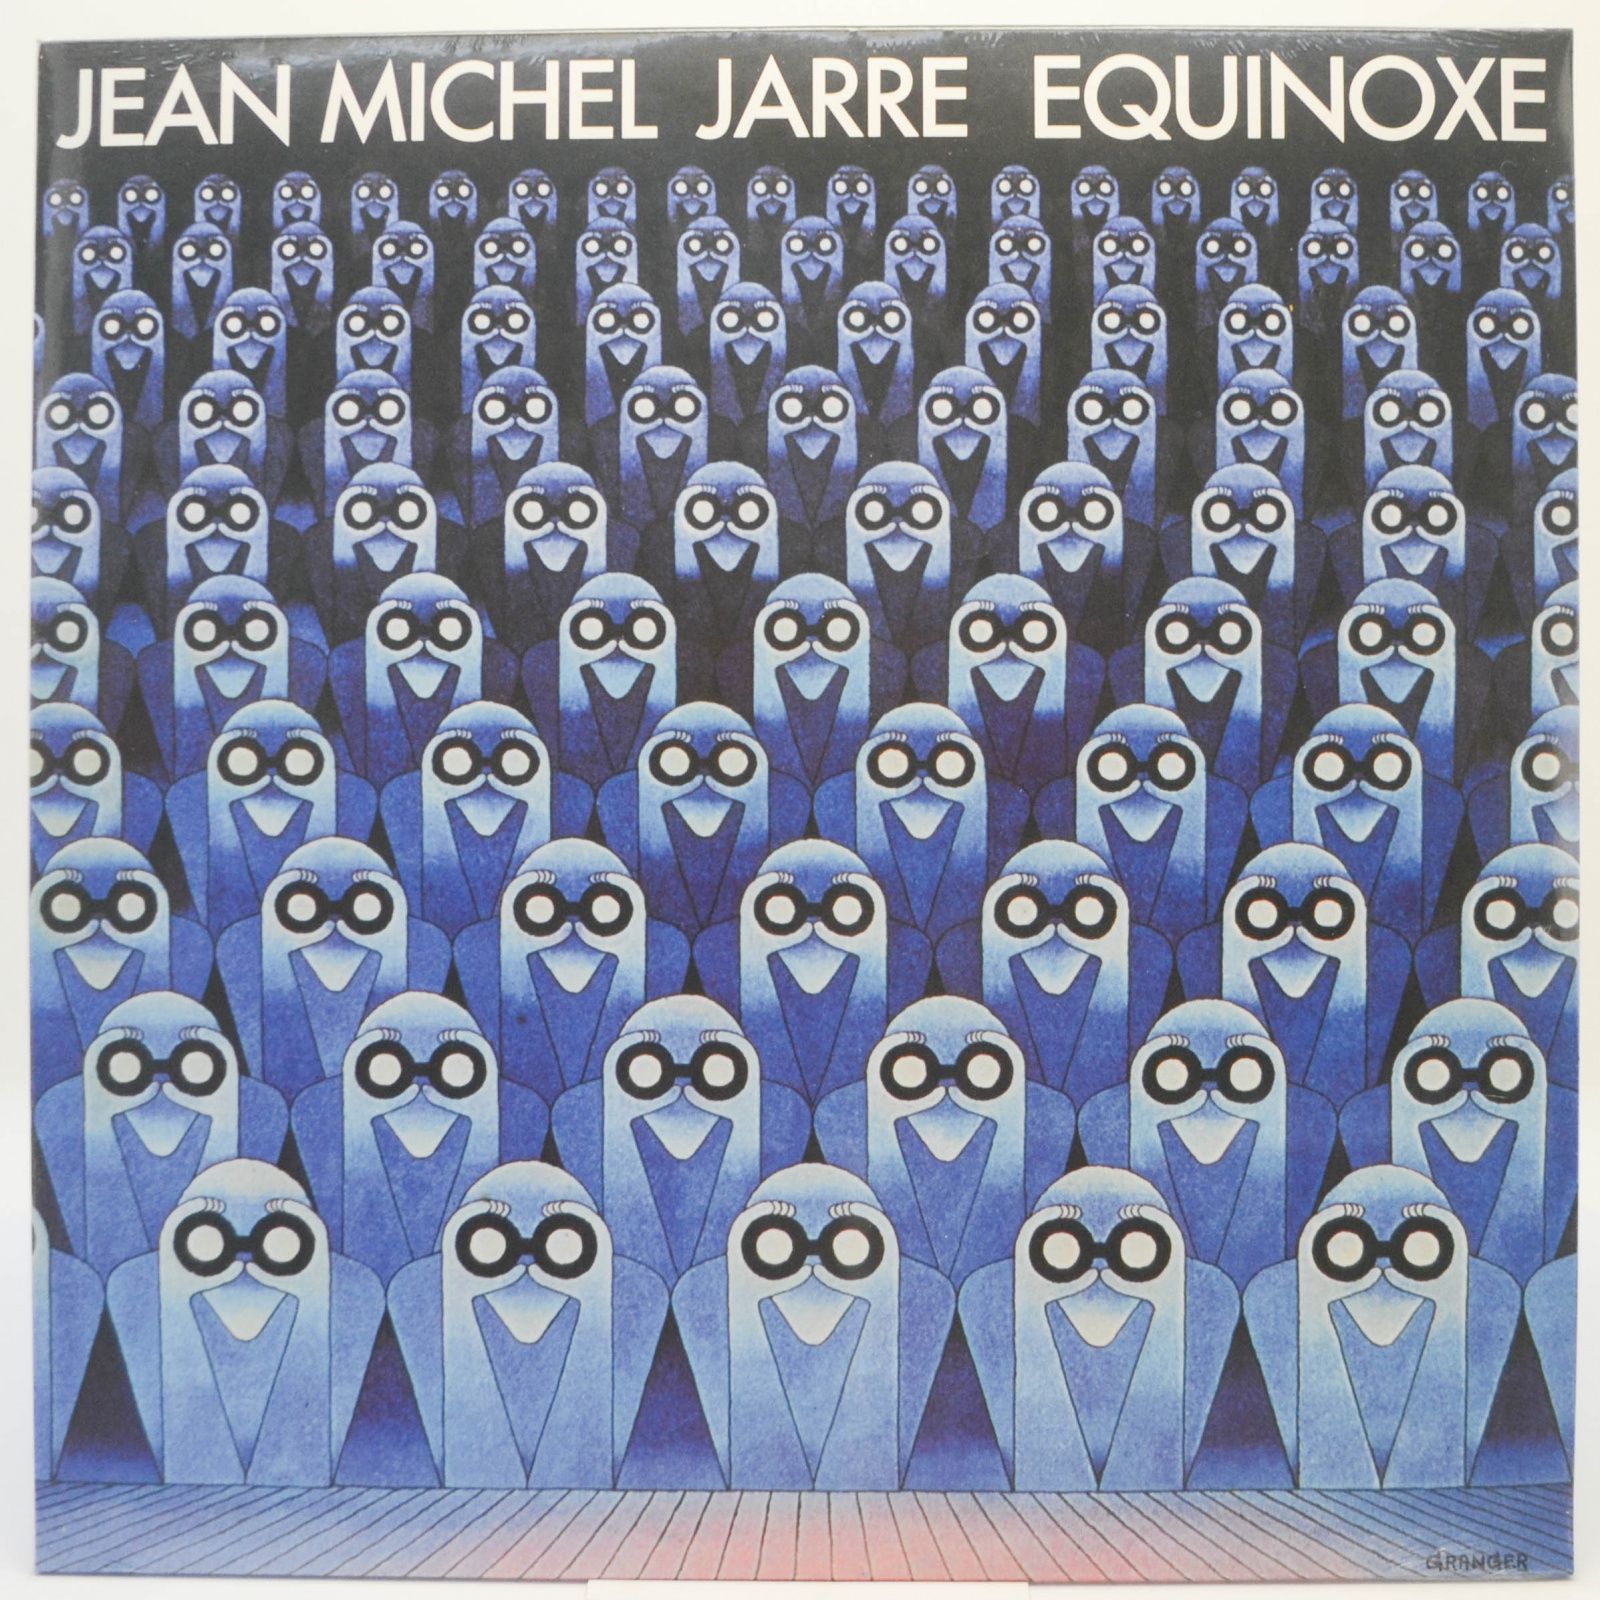 Equinoxe, 1978